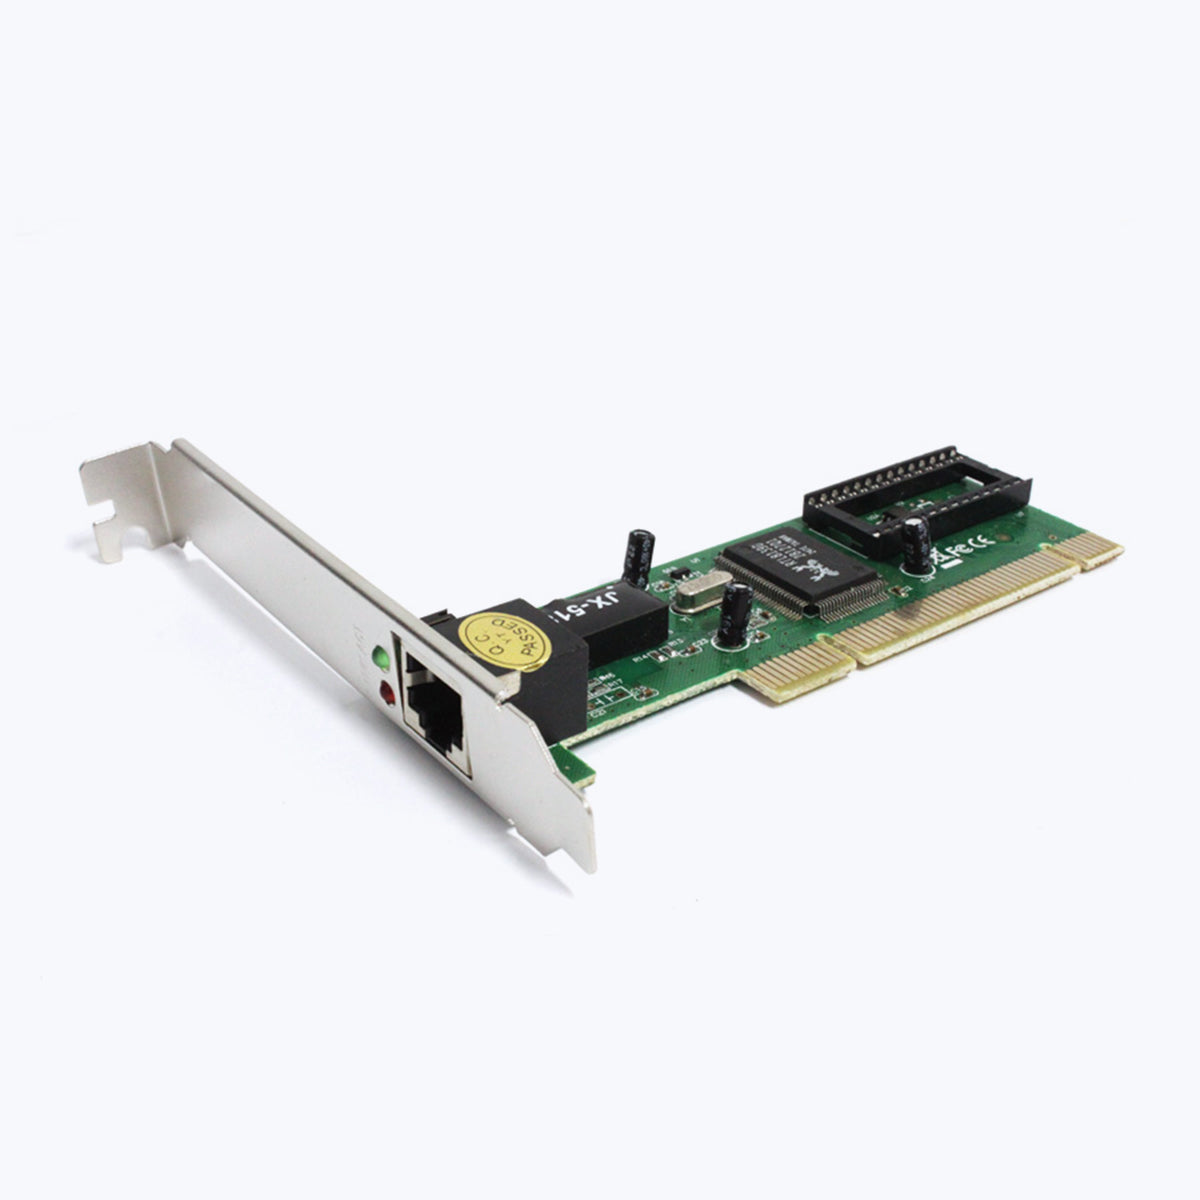 Zeb-P100L12, PCI LAN Card 10/100 Mbps - Add-on Cards - Zebronics